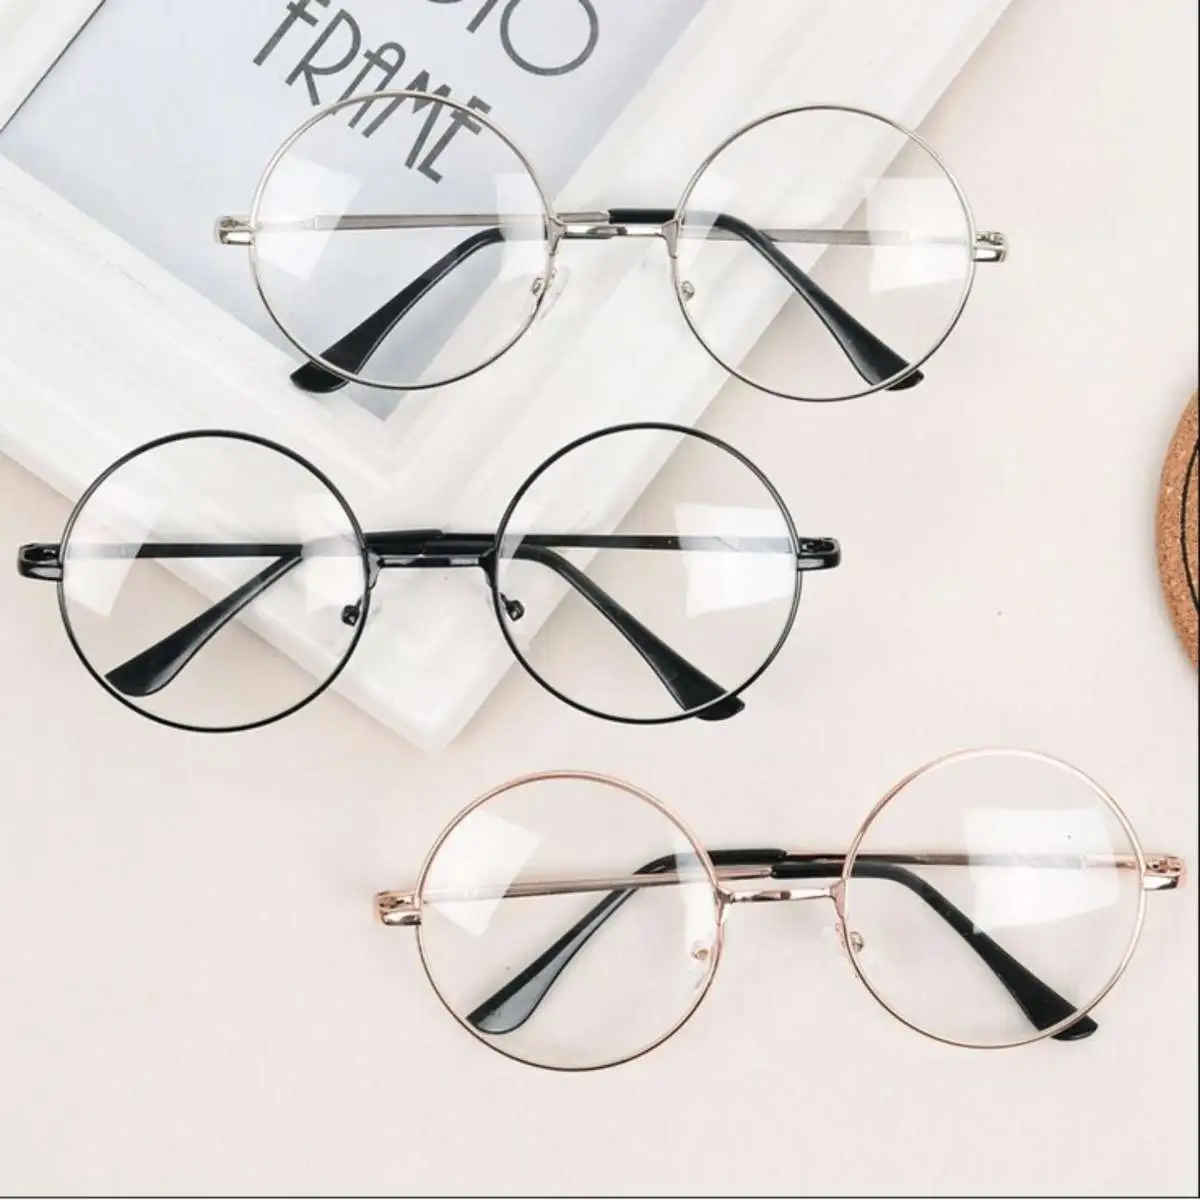 Premiem Glasses แว่นตากรองแสง แว่นกันแสงสีฟ้า กรอบแว่น โลหะ คุณภาพ ถนอมสายตา พร้อมส่ง